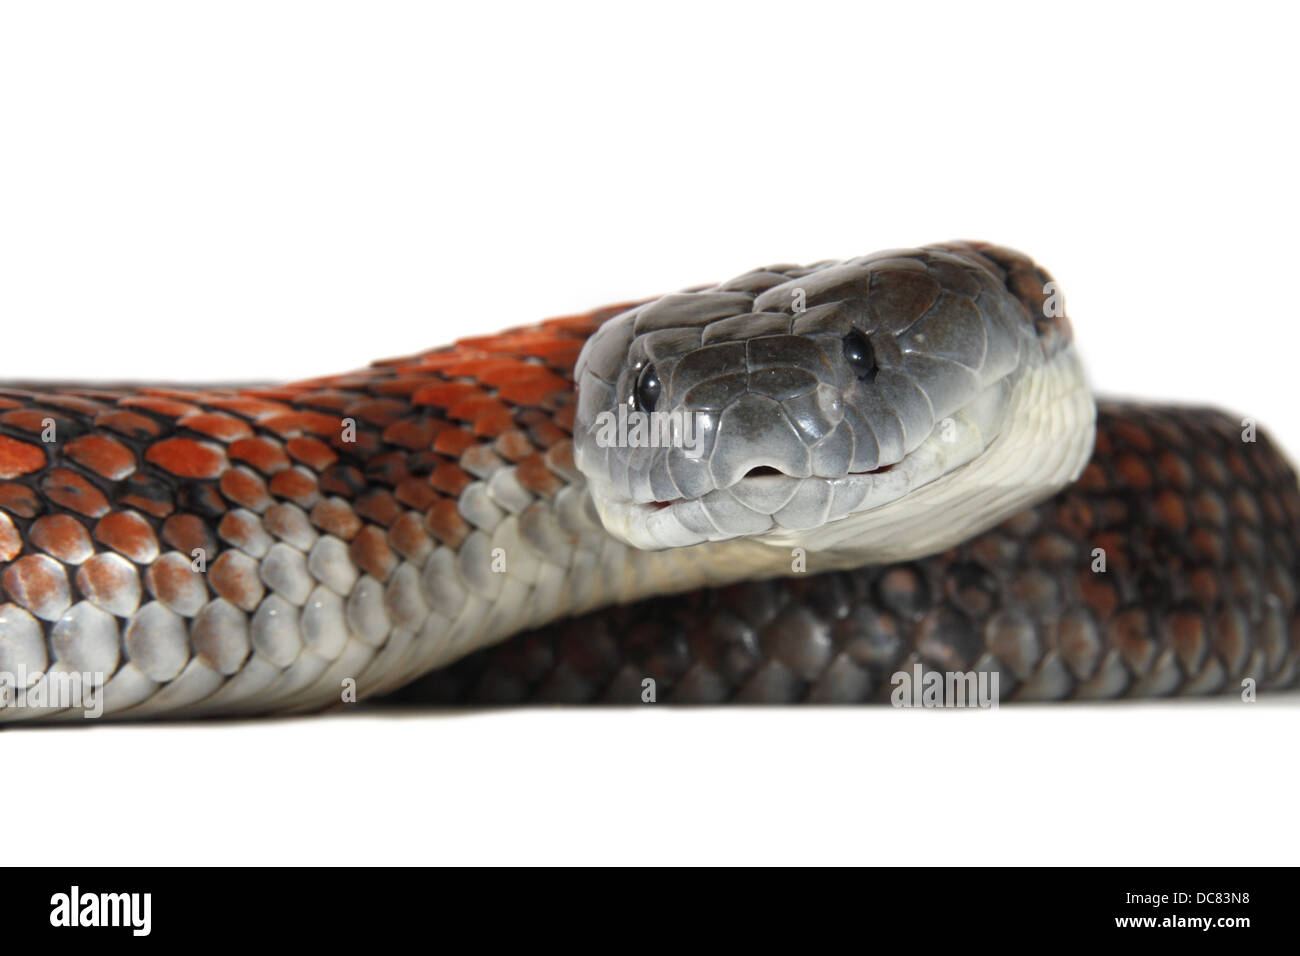 Tiger snake, notechis scutatus fotografato su uno sfondo bianco, regolati digitalmente pronto per easy cut-out Foto Stock